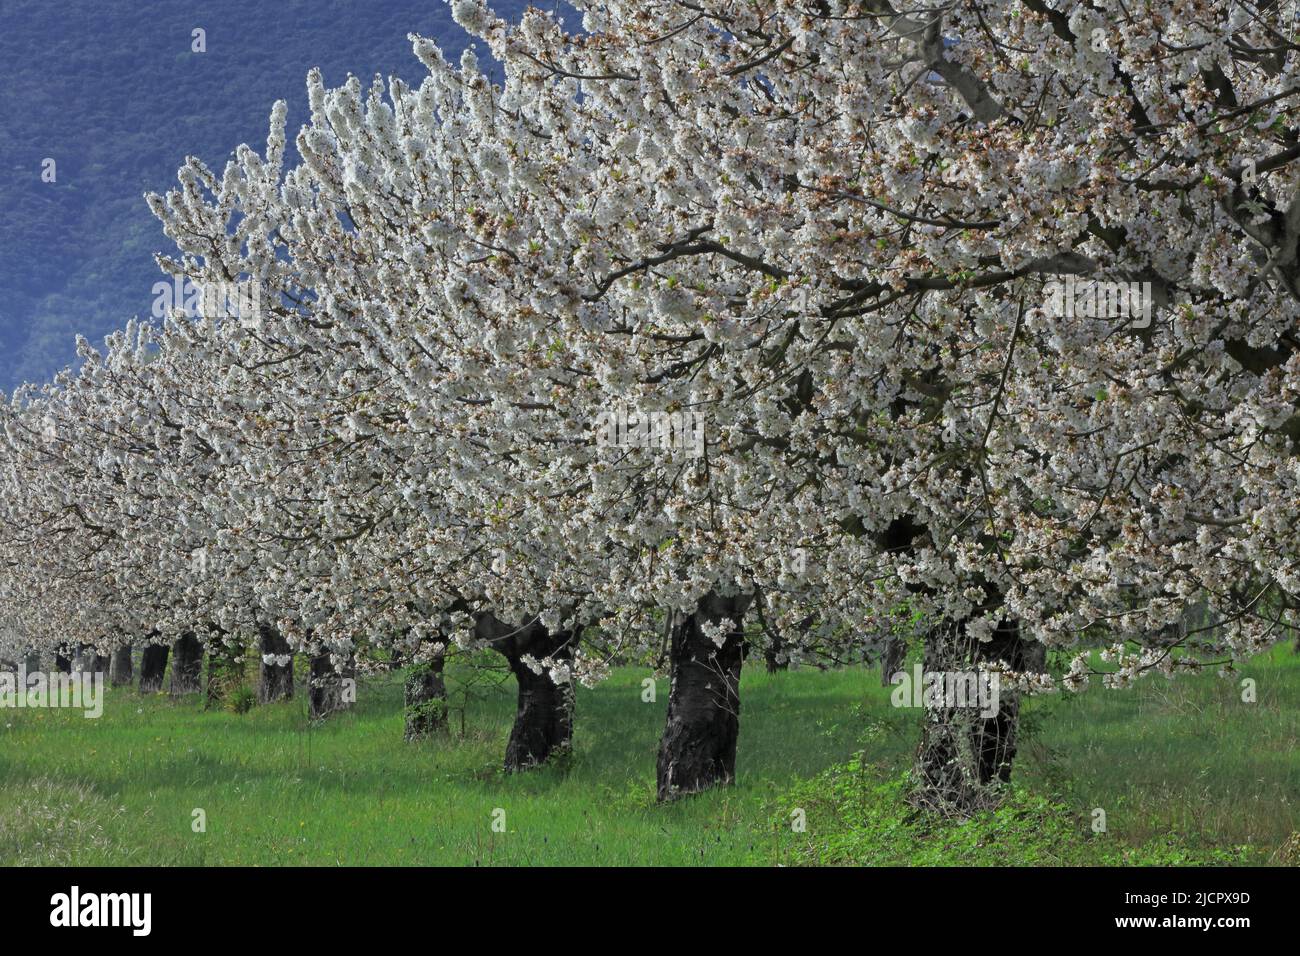 France, Vaucluse; verger de cerisier en fleur Banque D'Images